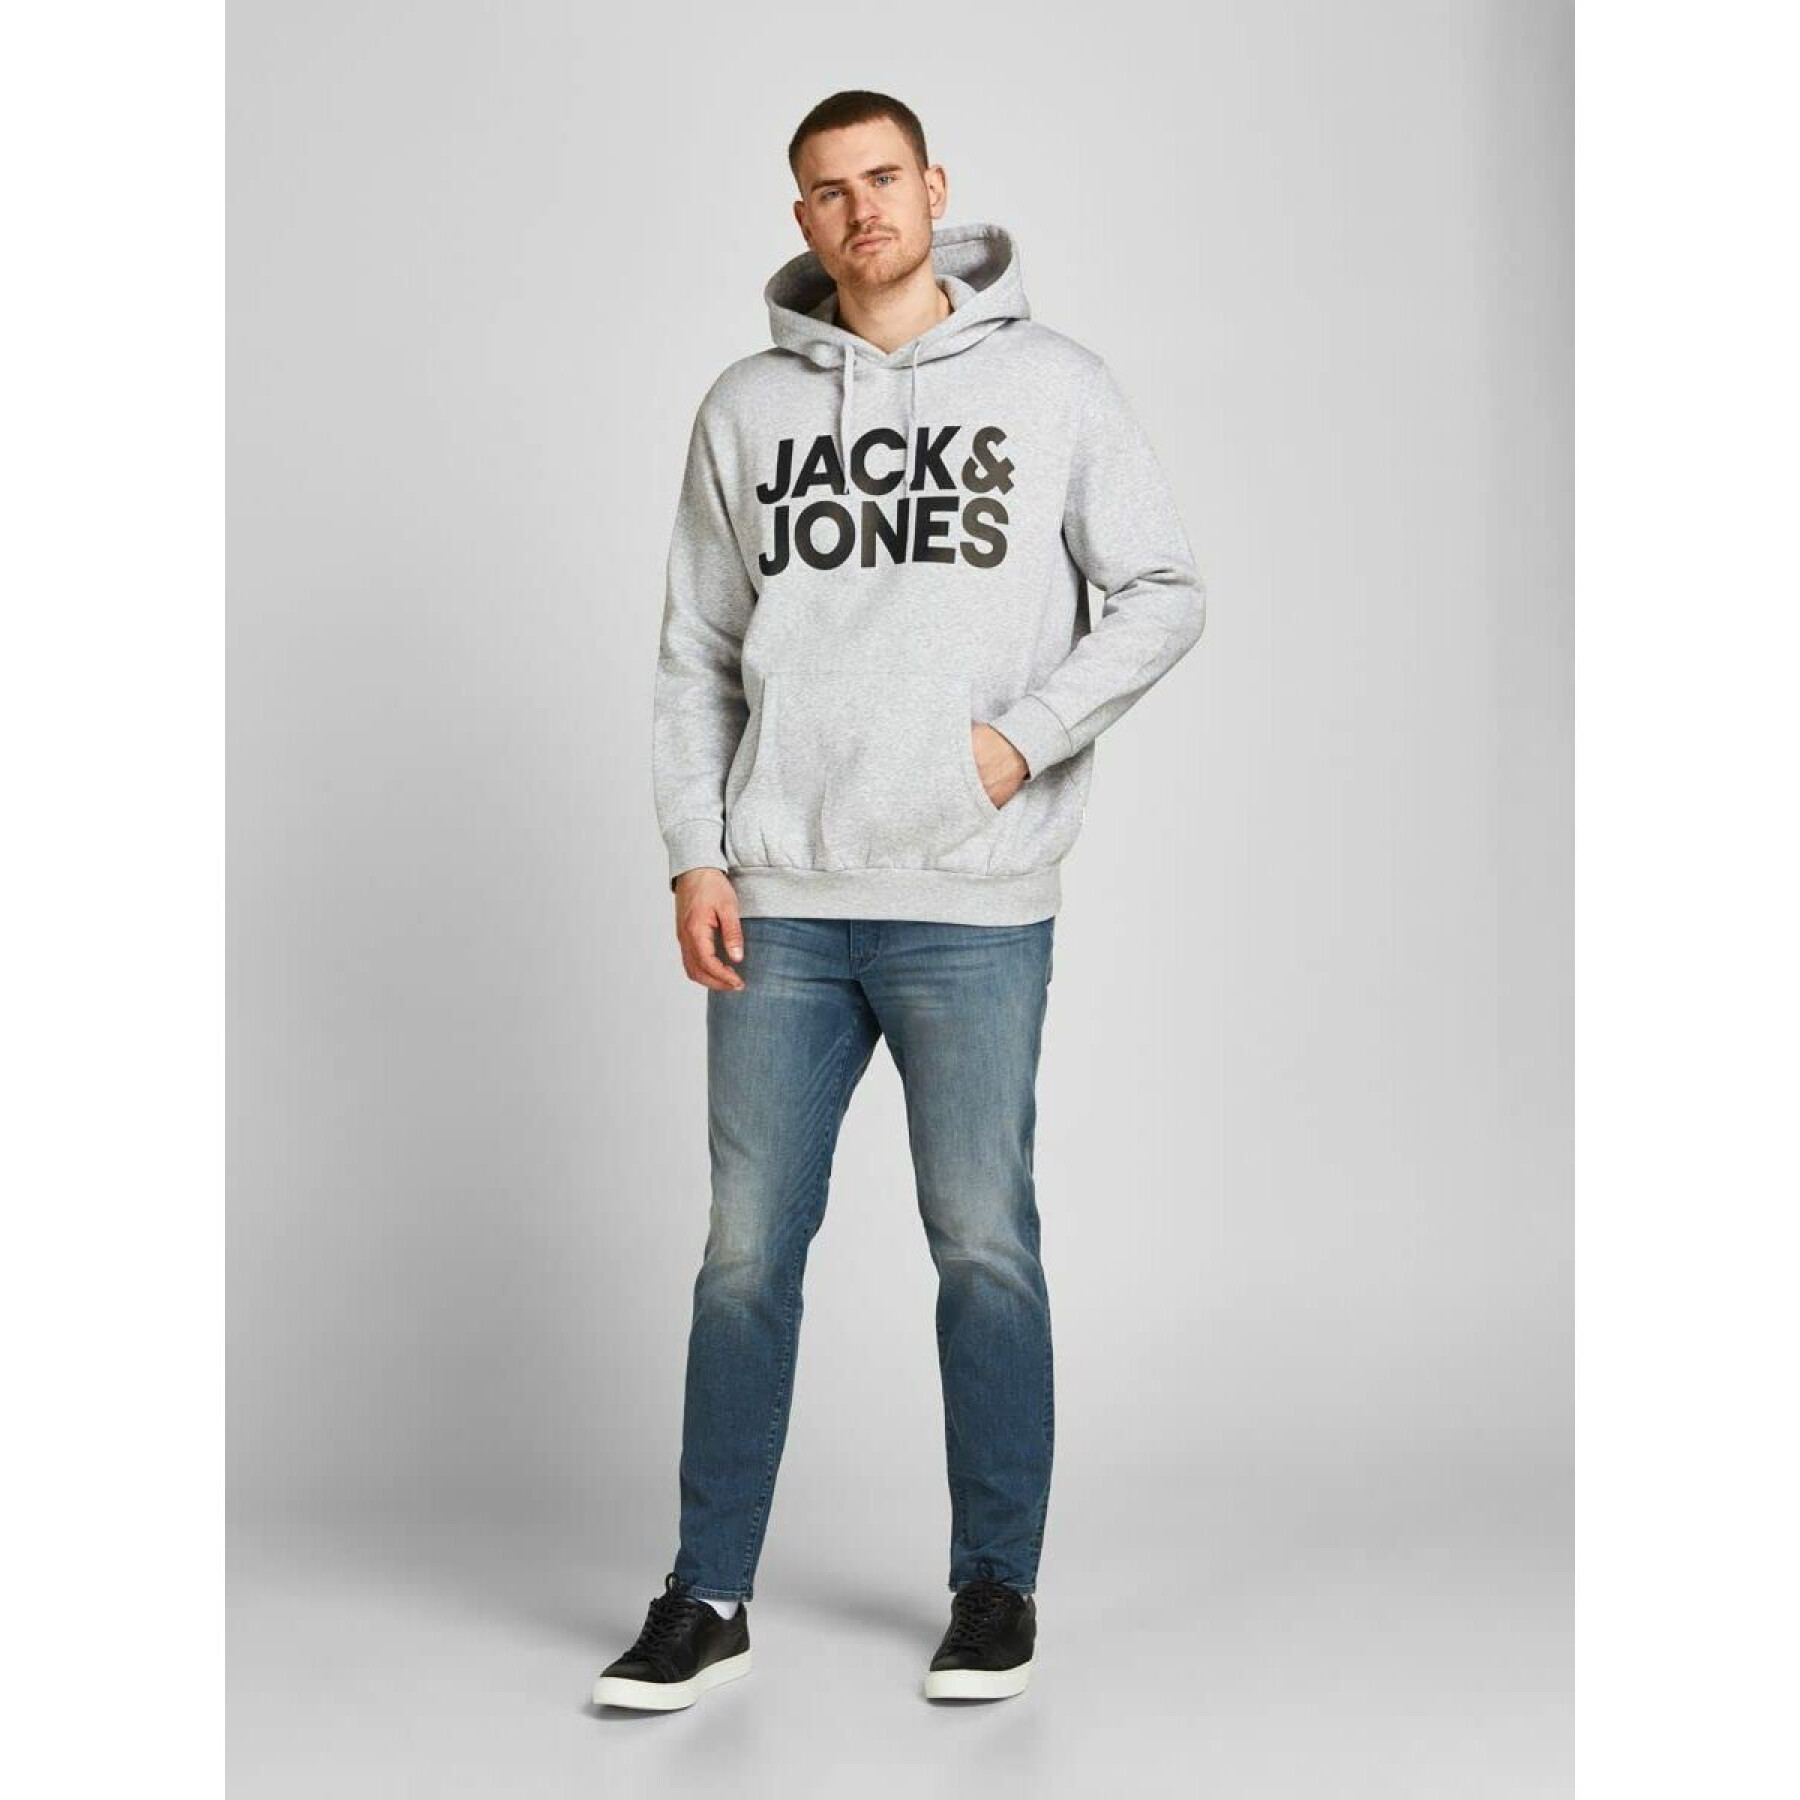 Felpa con cappuccio di taglia grande Jack & Jones Corp Logo